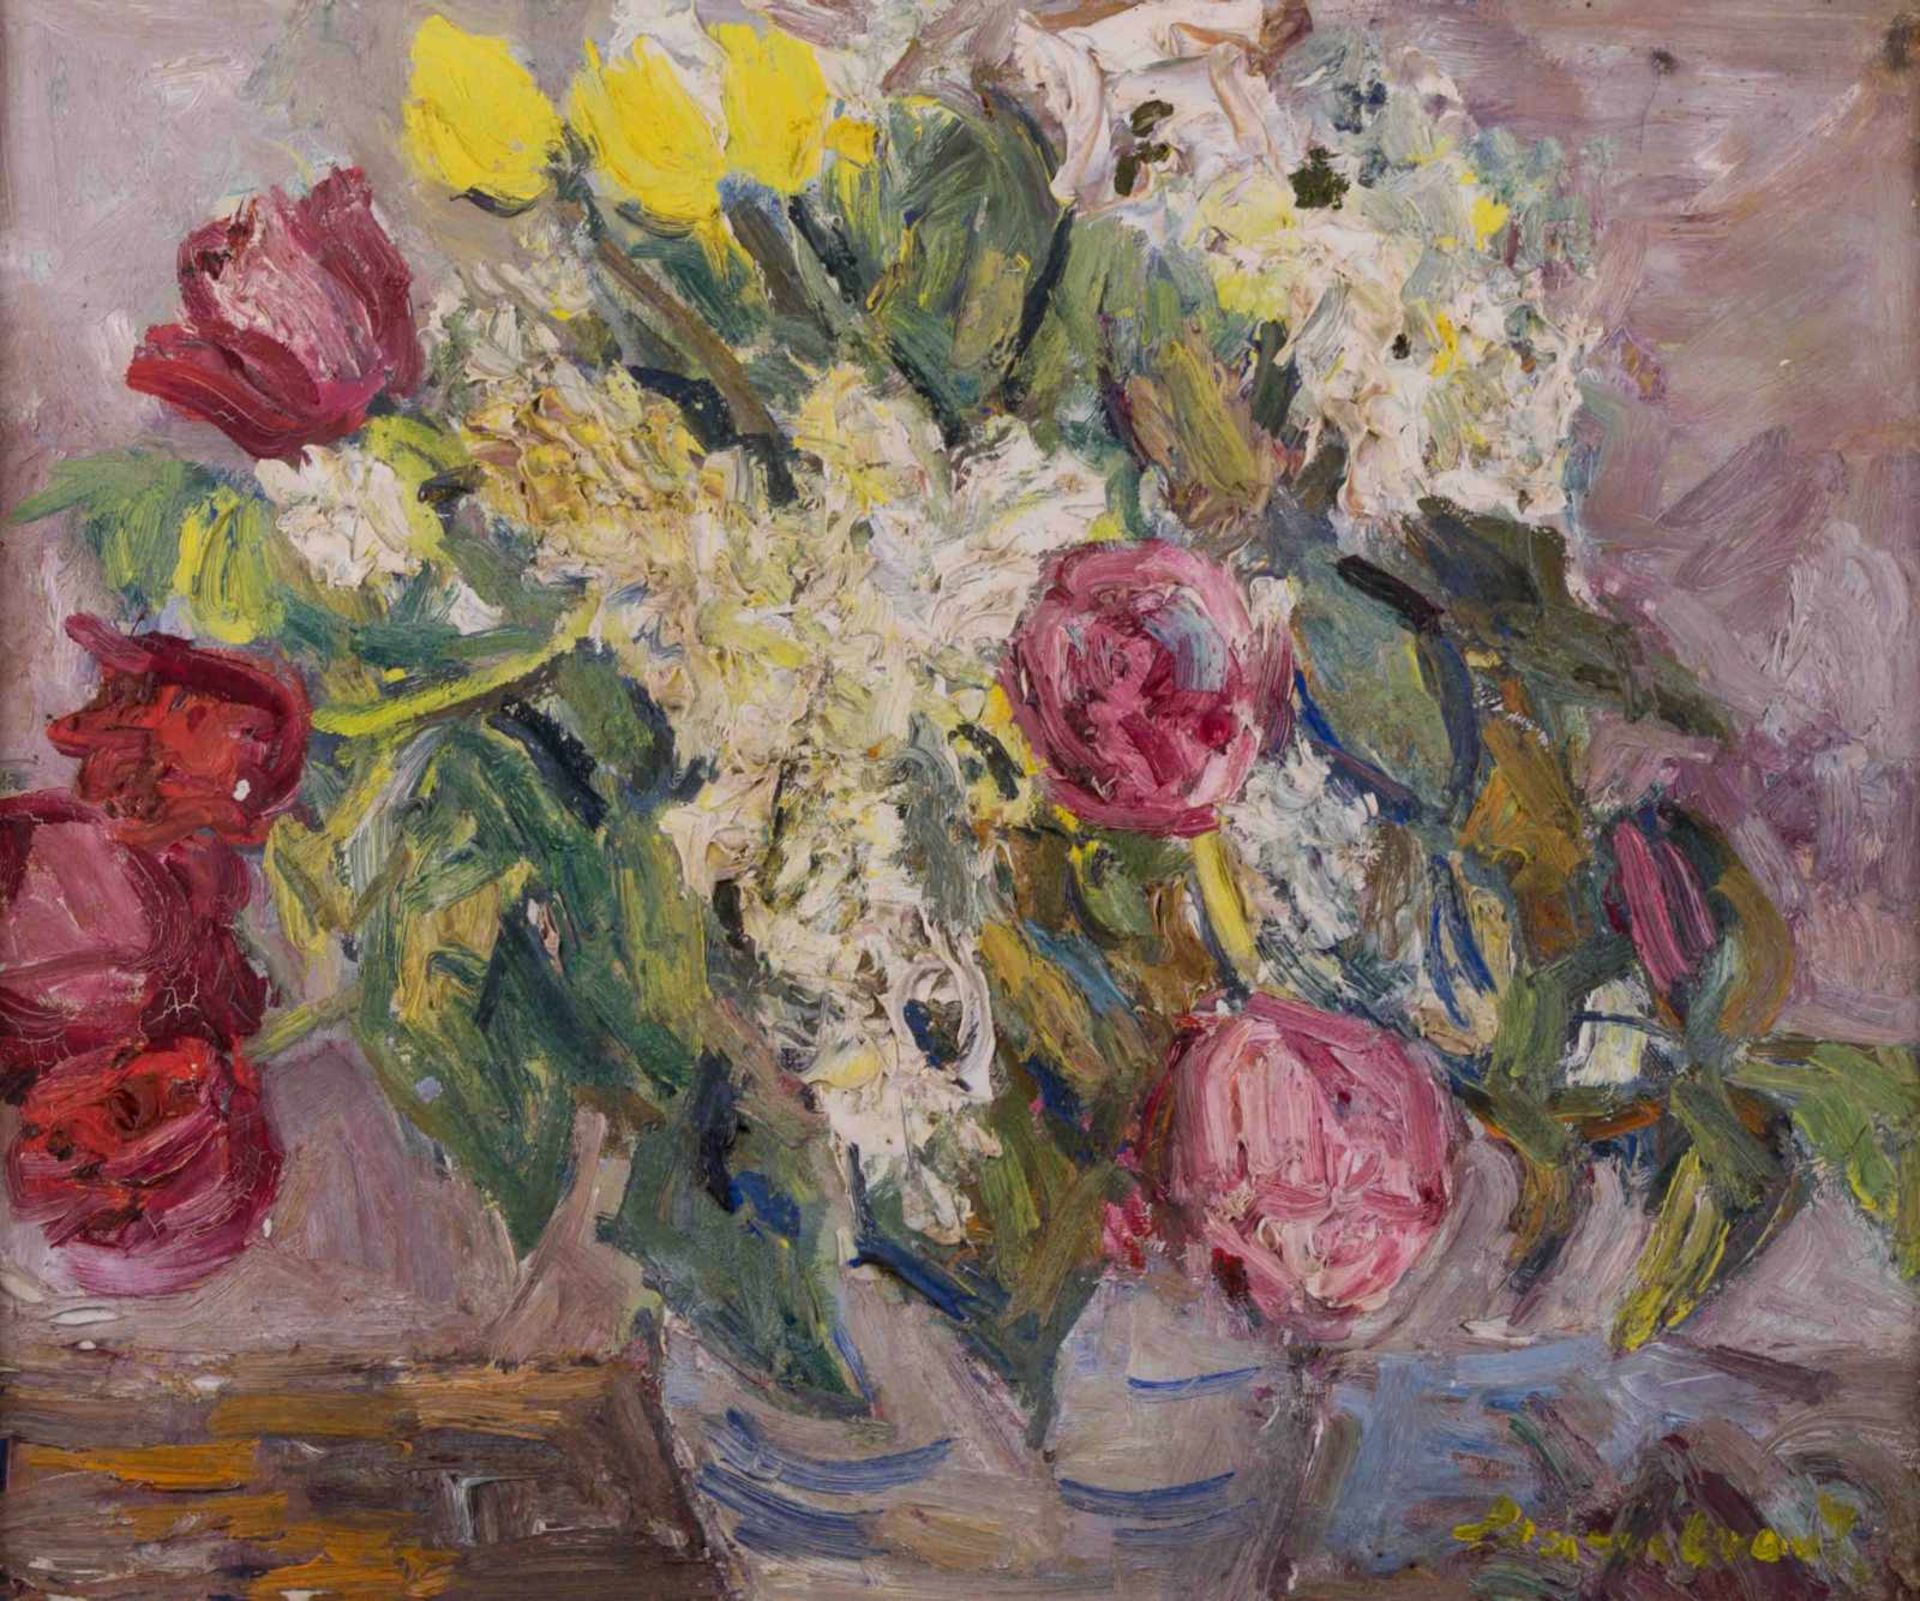 Ernst HASSEBRAUK (1905-1974) "Stillleben mit Tulpen" Gemälde Öl/Leinwand, 46,5 cm x 55 cm, rechts